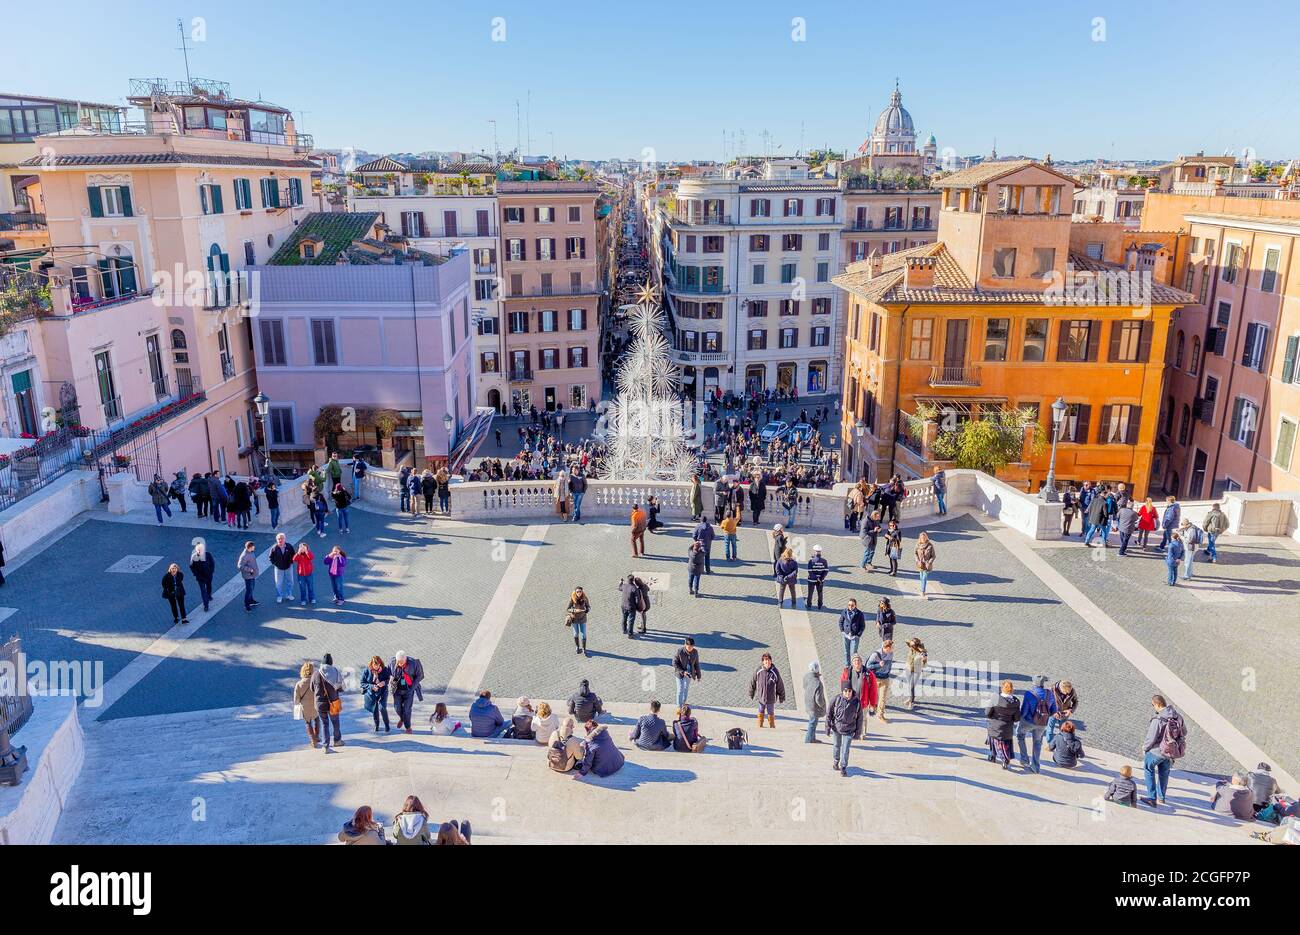 Piazza di Spagna, Rom, Italien. Piazza di Spagna, am Fuße der Spanischen Treppe, ist einer der berühmtesten Plätze in Rom. Stockfoto